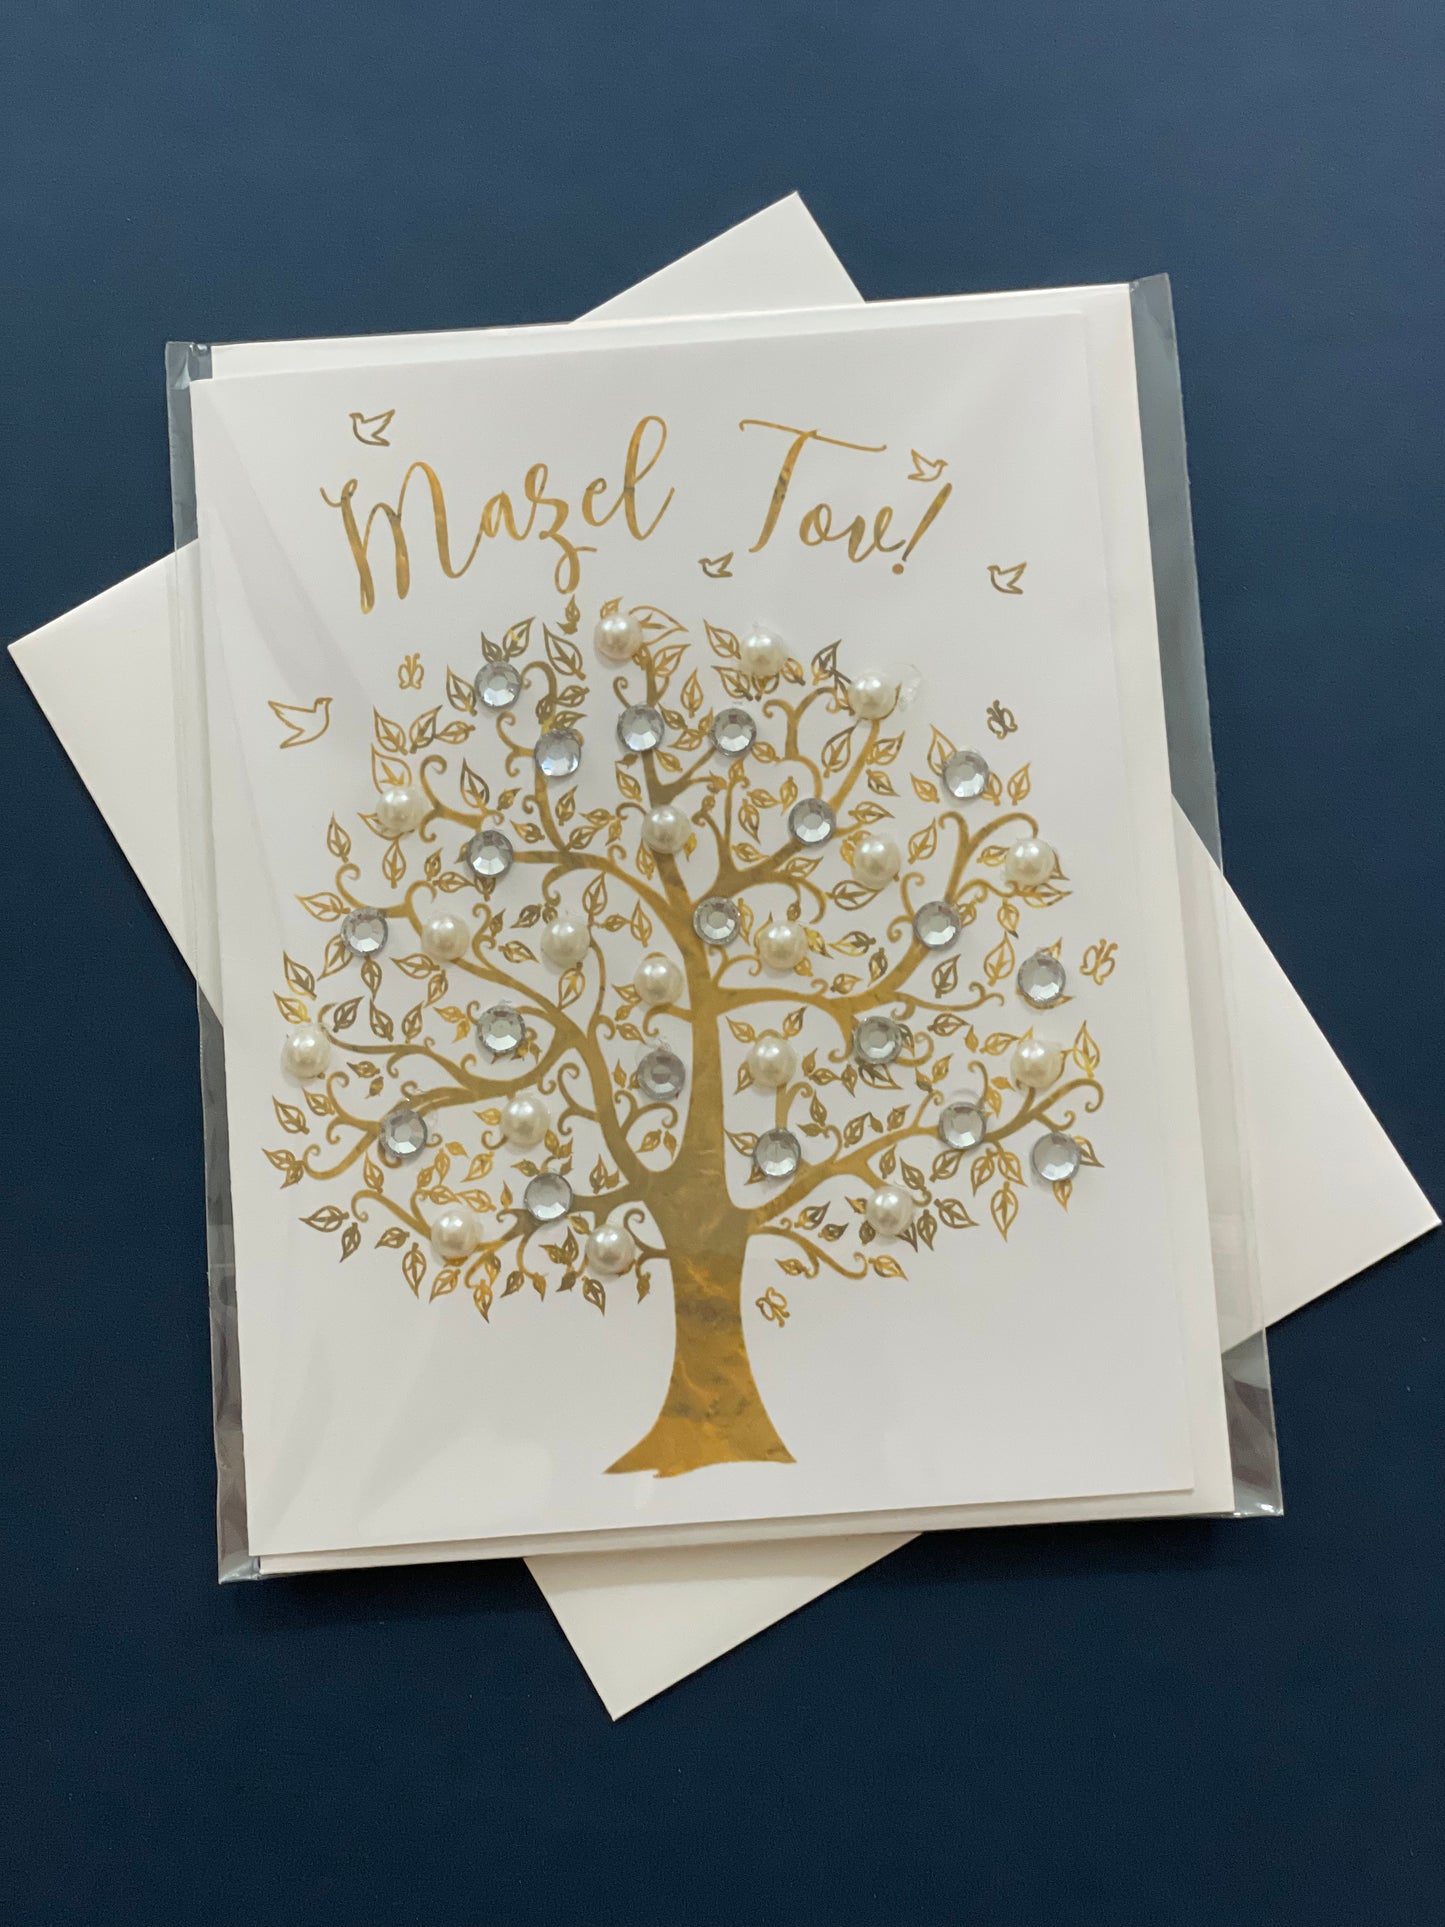 Mazel Tov Tree of Life - Greeting Card Mini Size